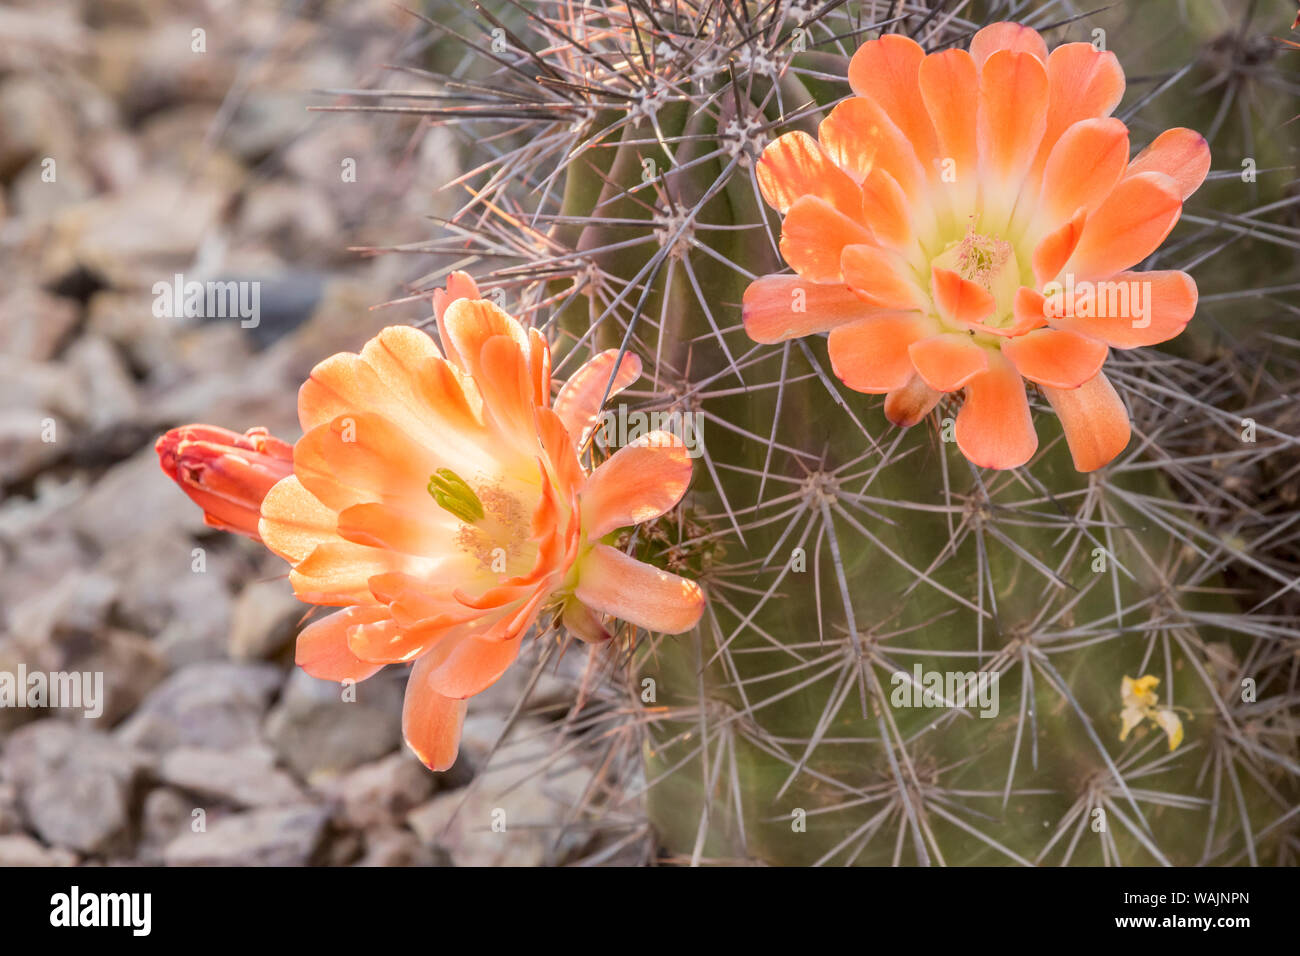 USA, Arizona, le Jardin botanique du désert. Fleurs de cactus et d'épines. En tant que crédit : Cathy et Gordon Illg / Jaynes Gallery / DanitaDelimont.com Banque D'Images